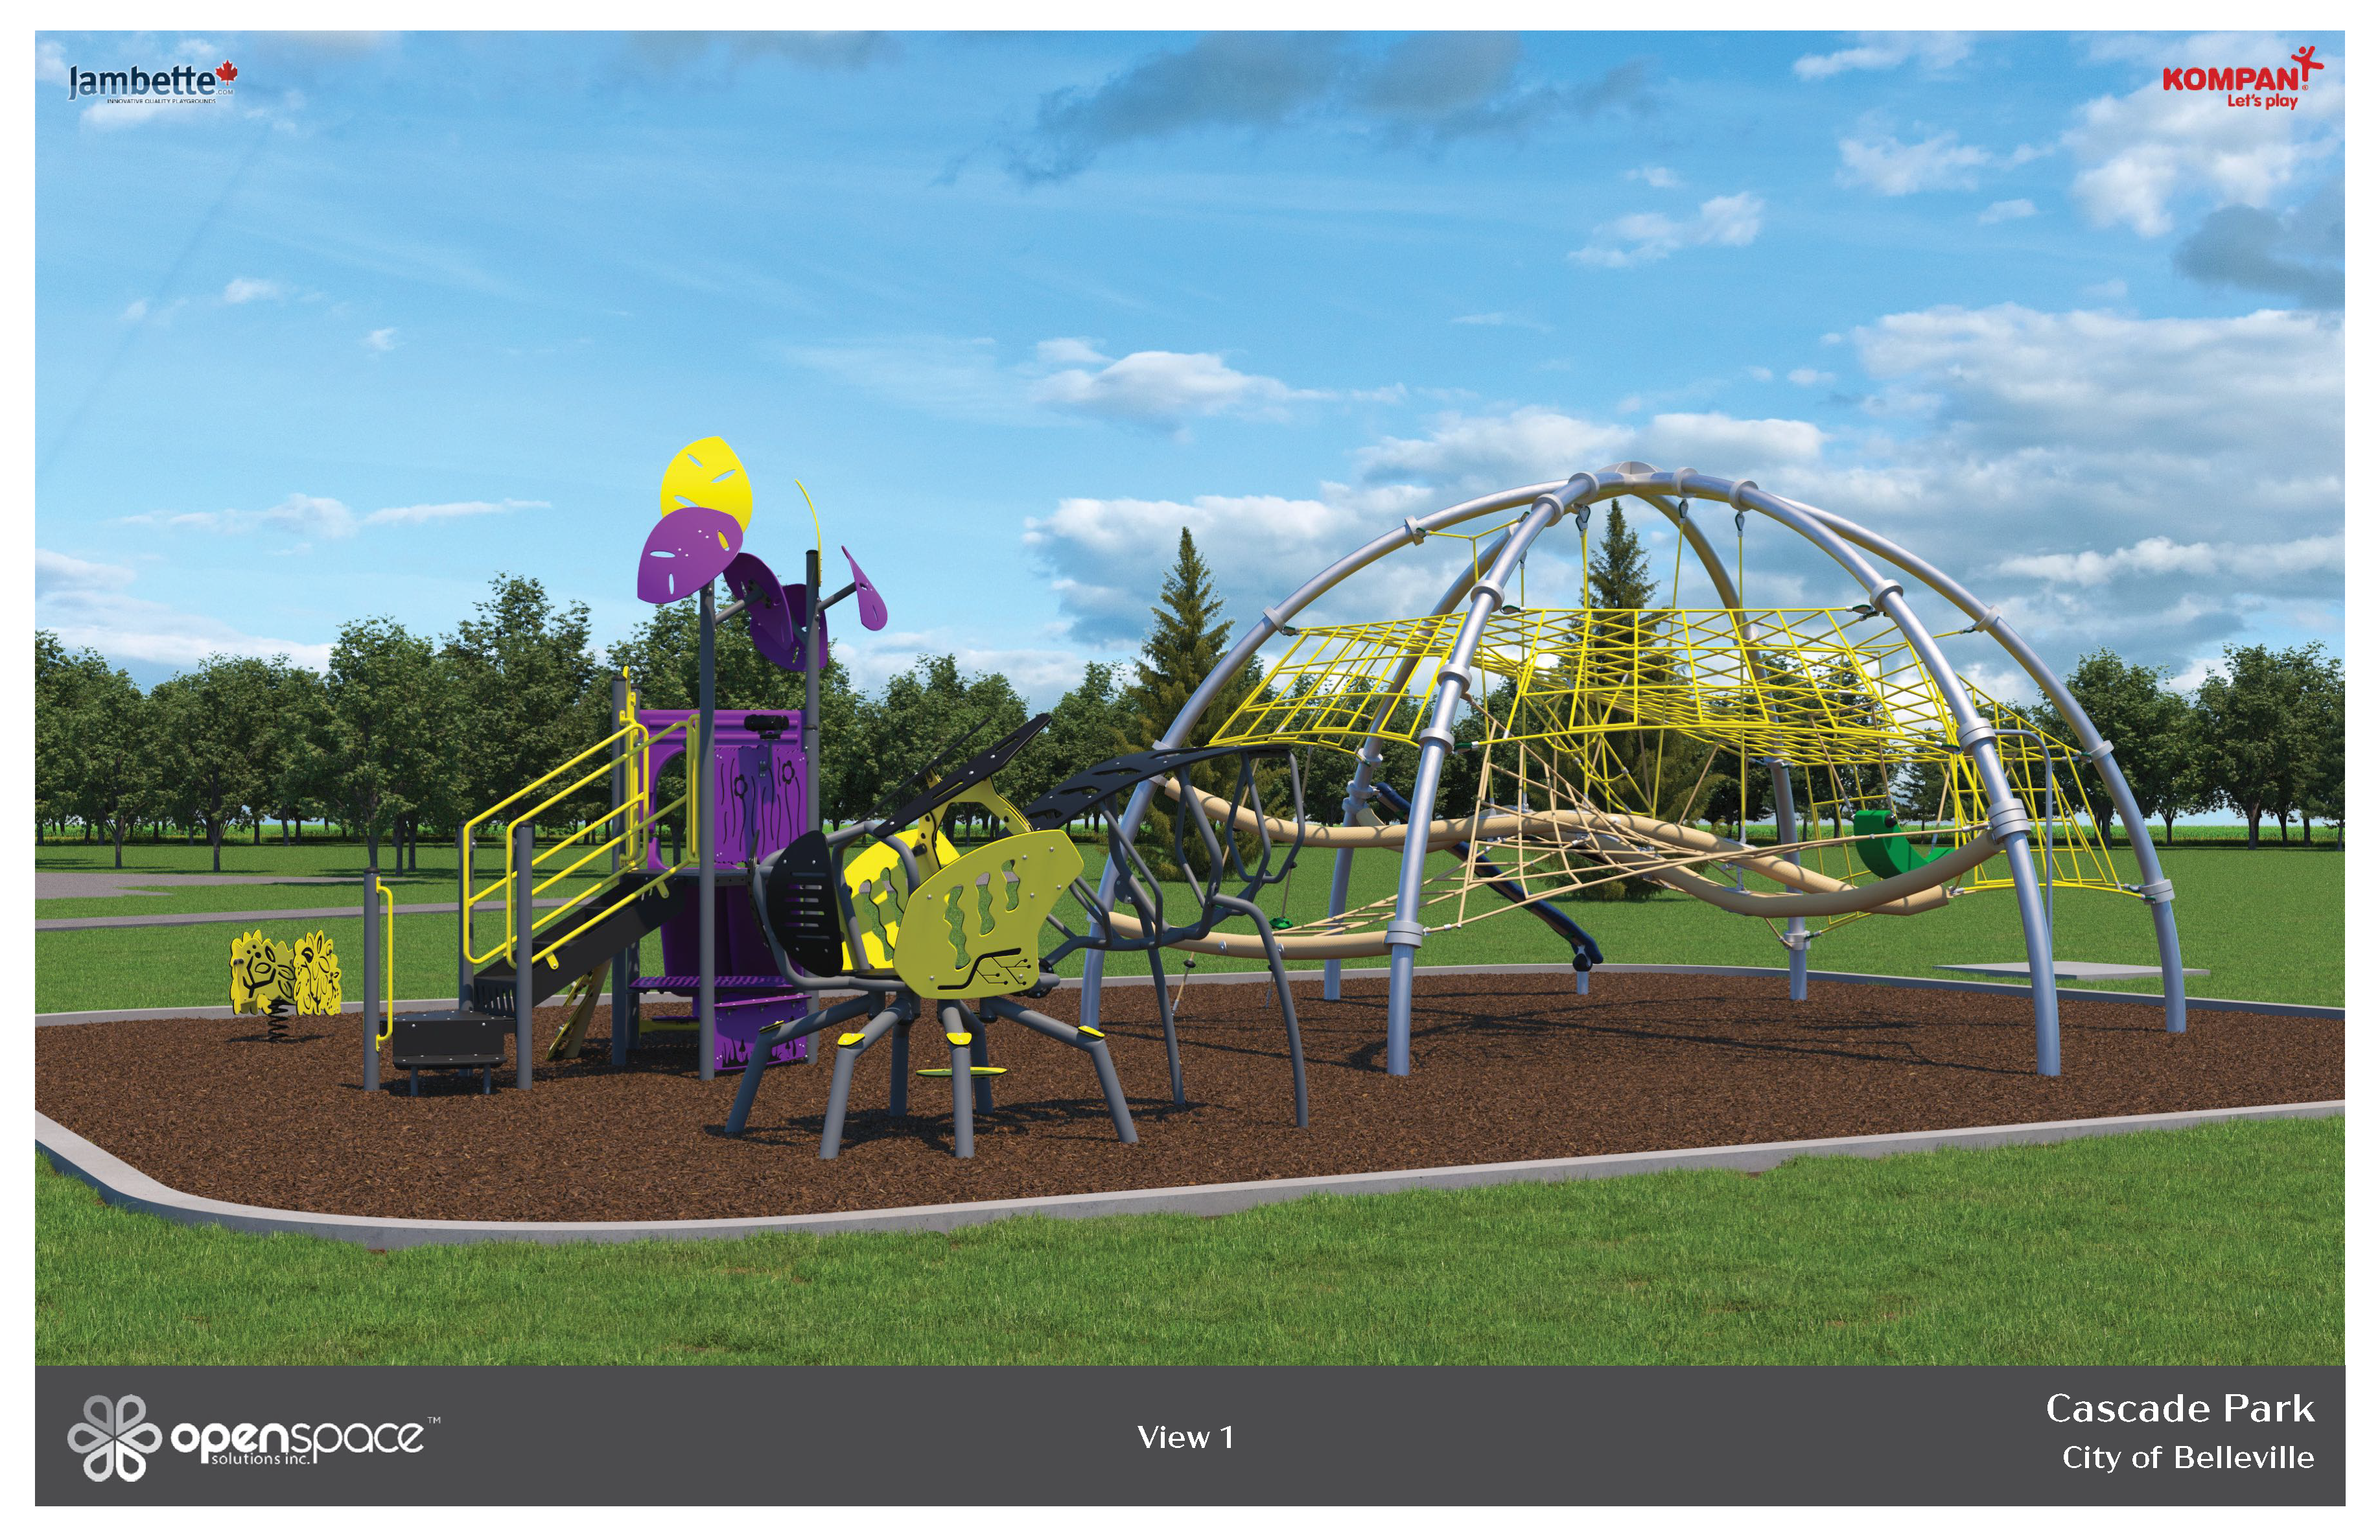 Cascade Park Design Concept, shows playground equipment